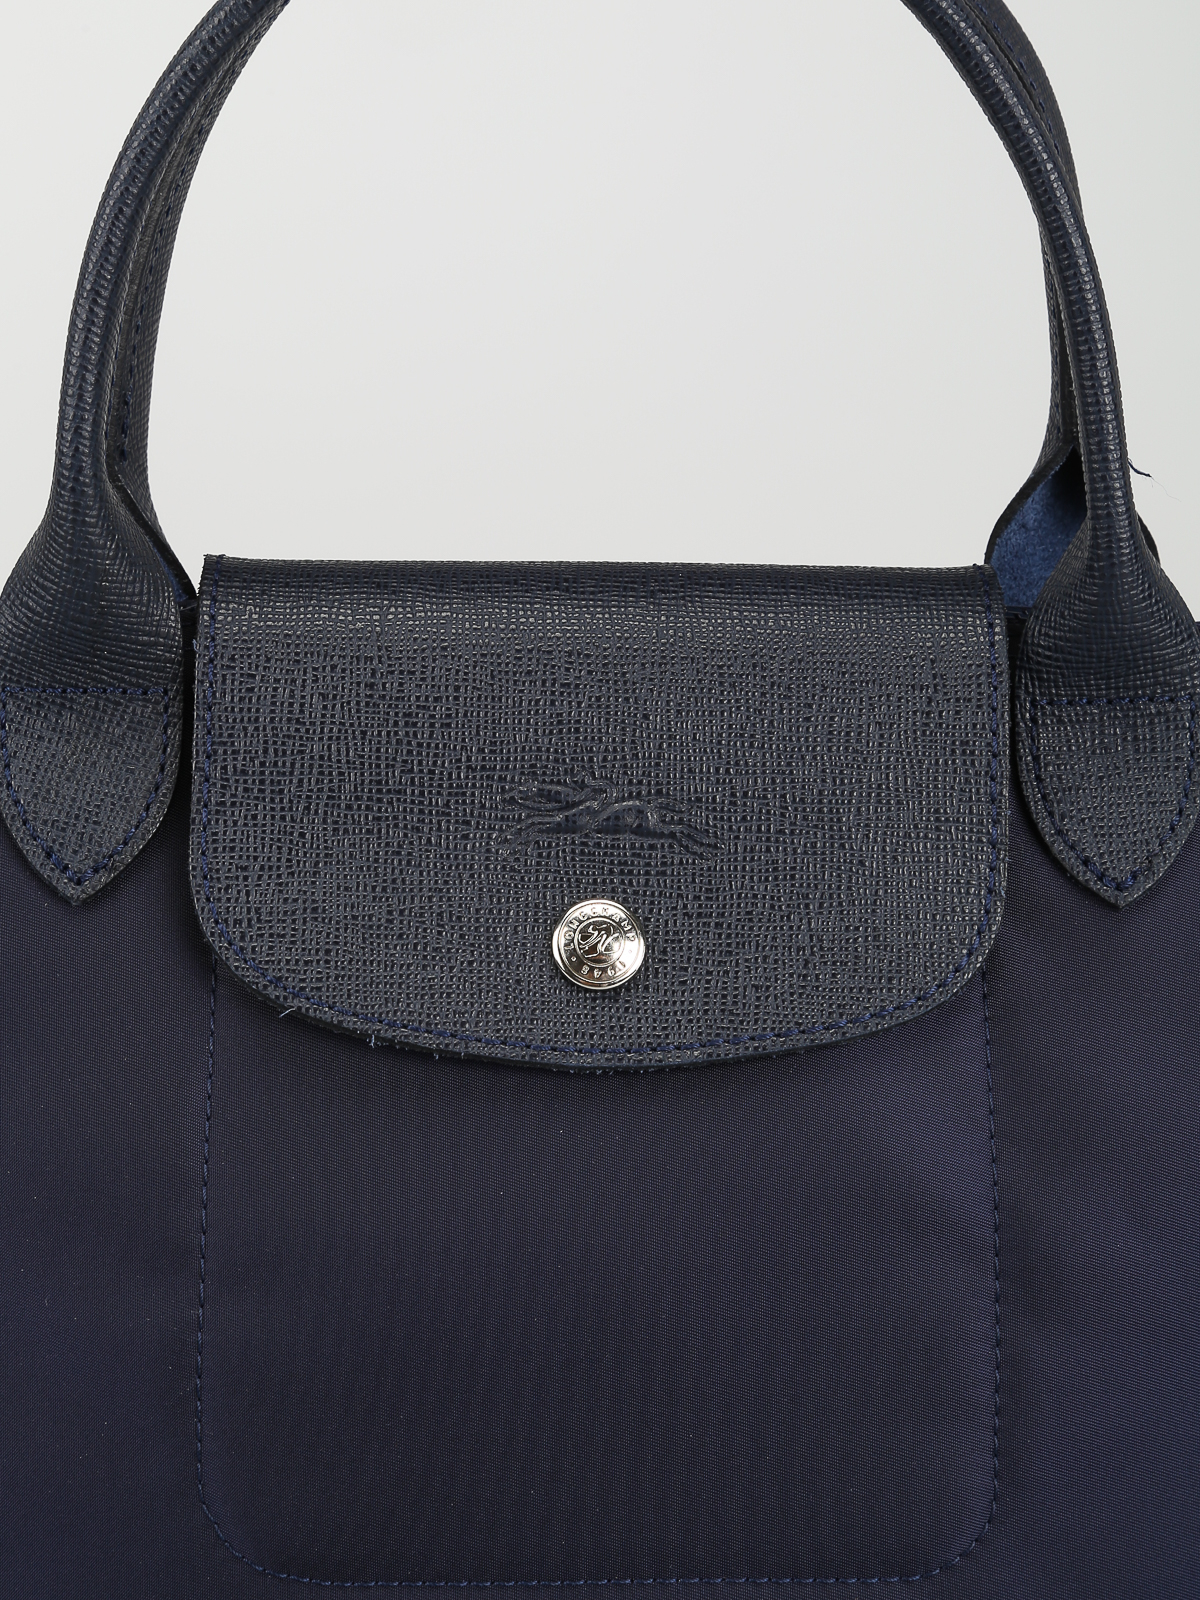 Longchamp, Bags, Longchamp Le Pliage Neo Tote Bag Size Large Blue